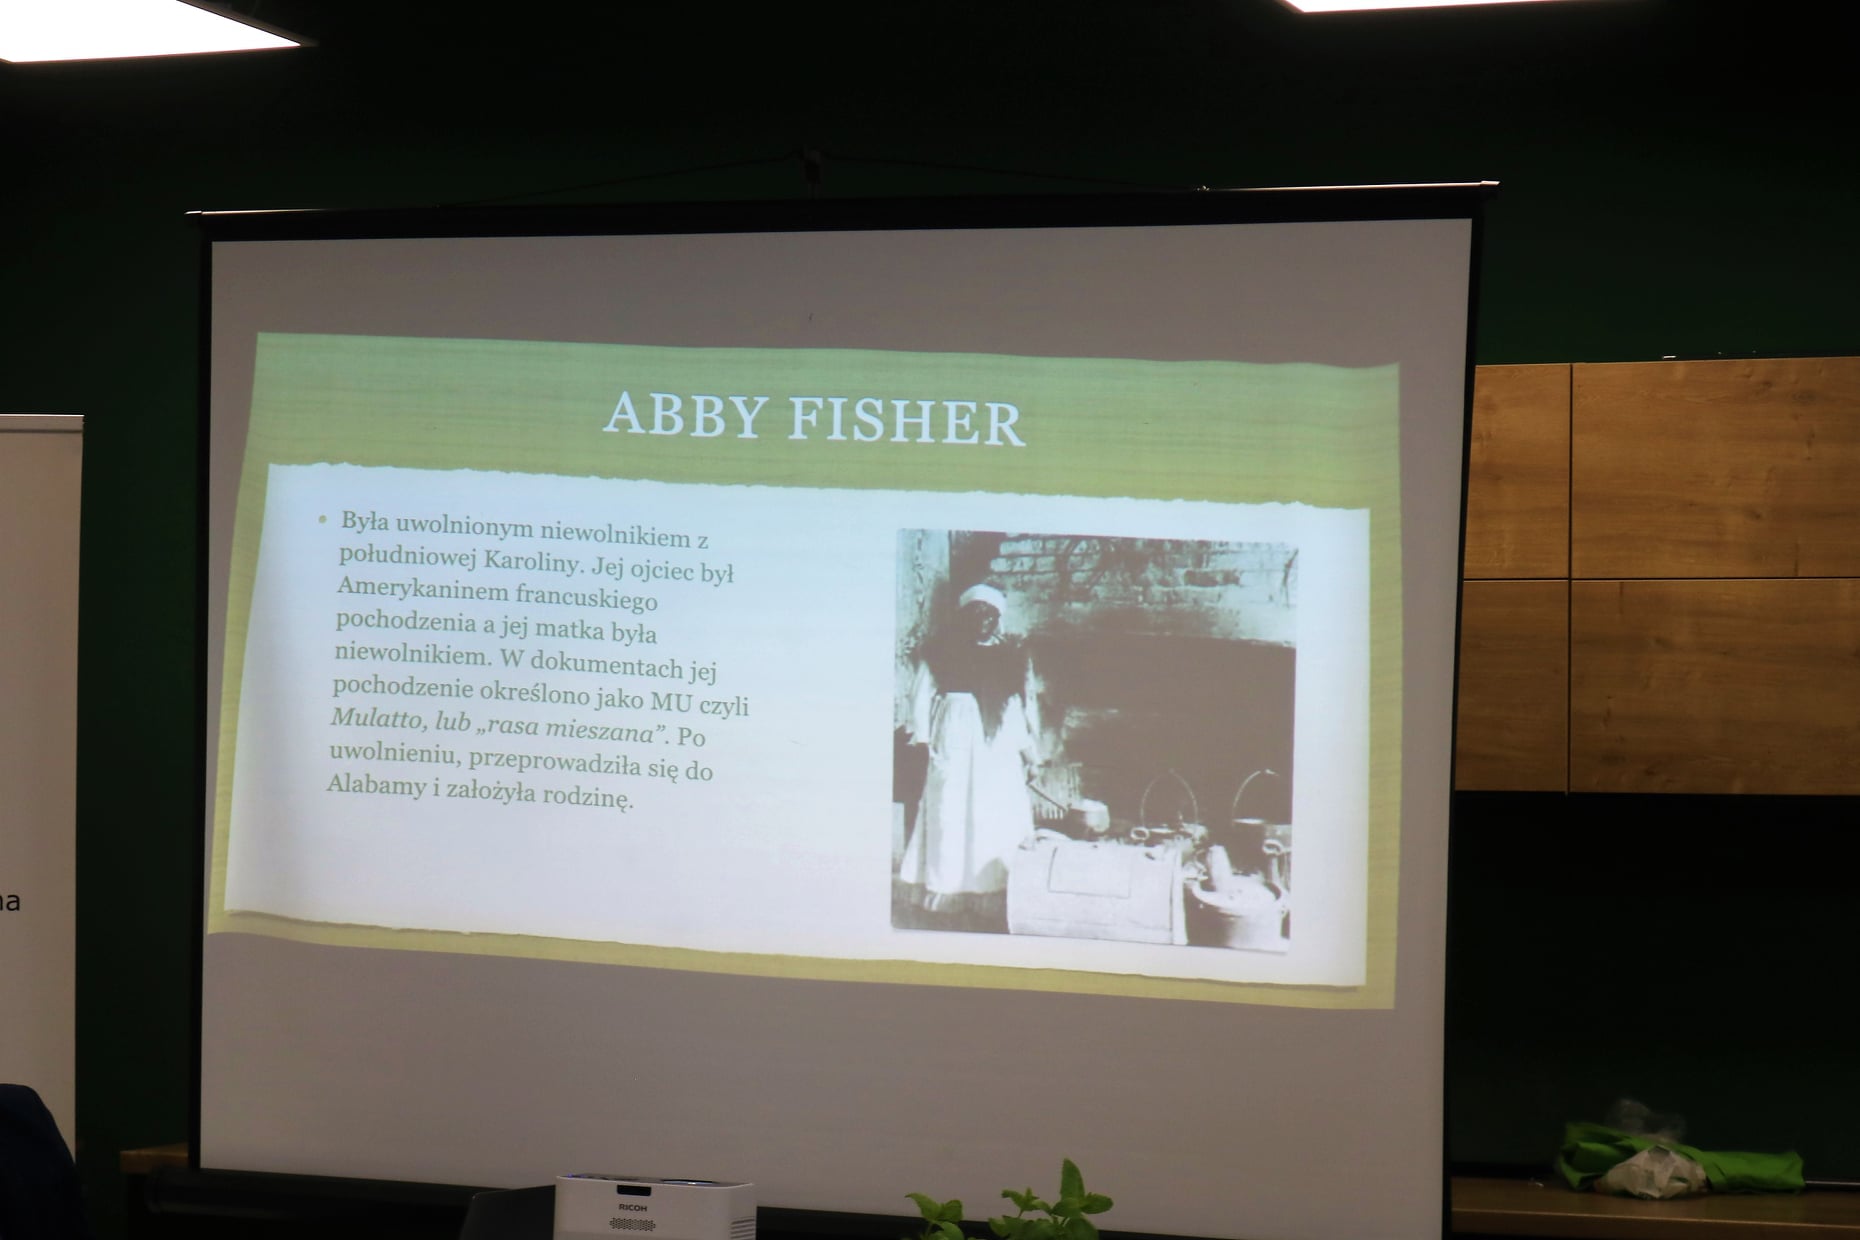 Szef kuchni prezentuje historię Abby Fisher w bibliotece na tle kuchni